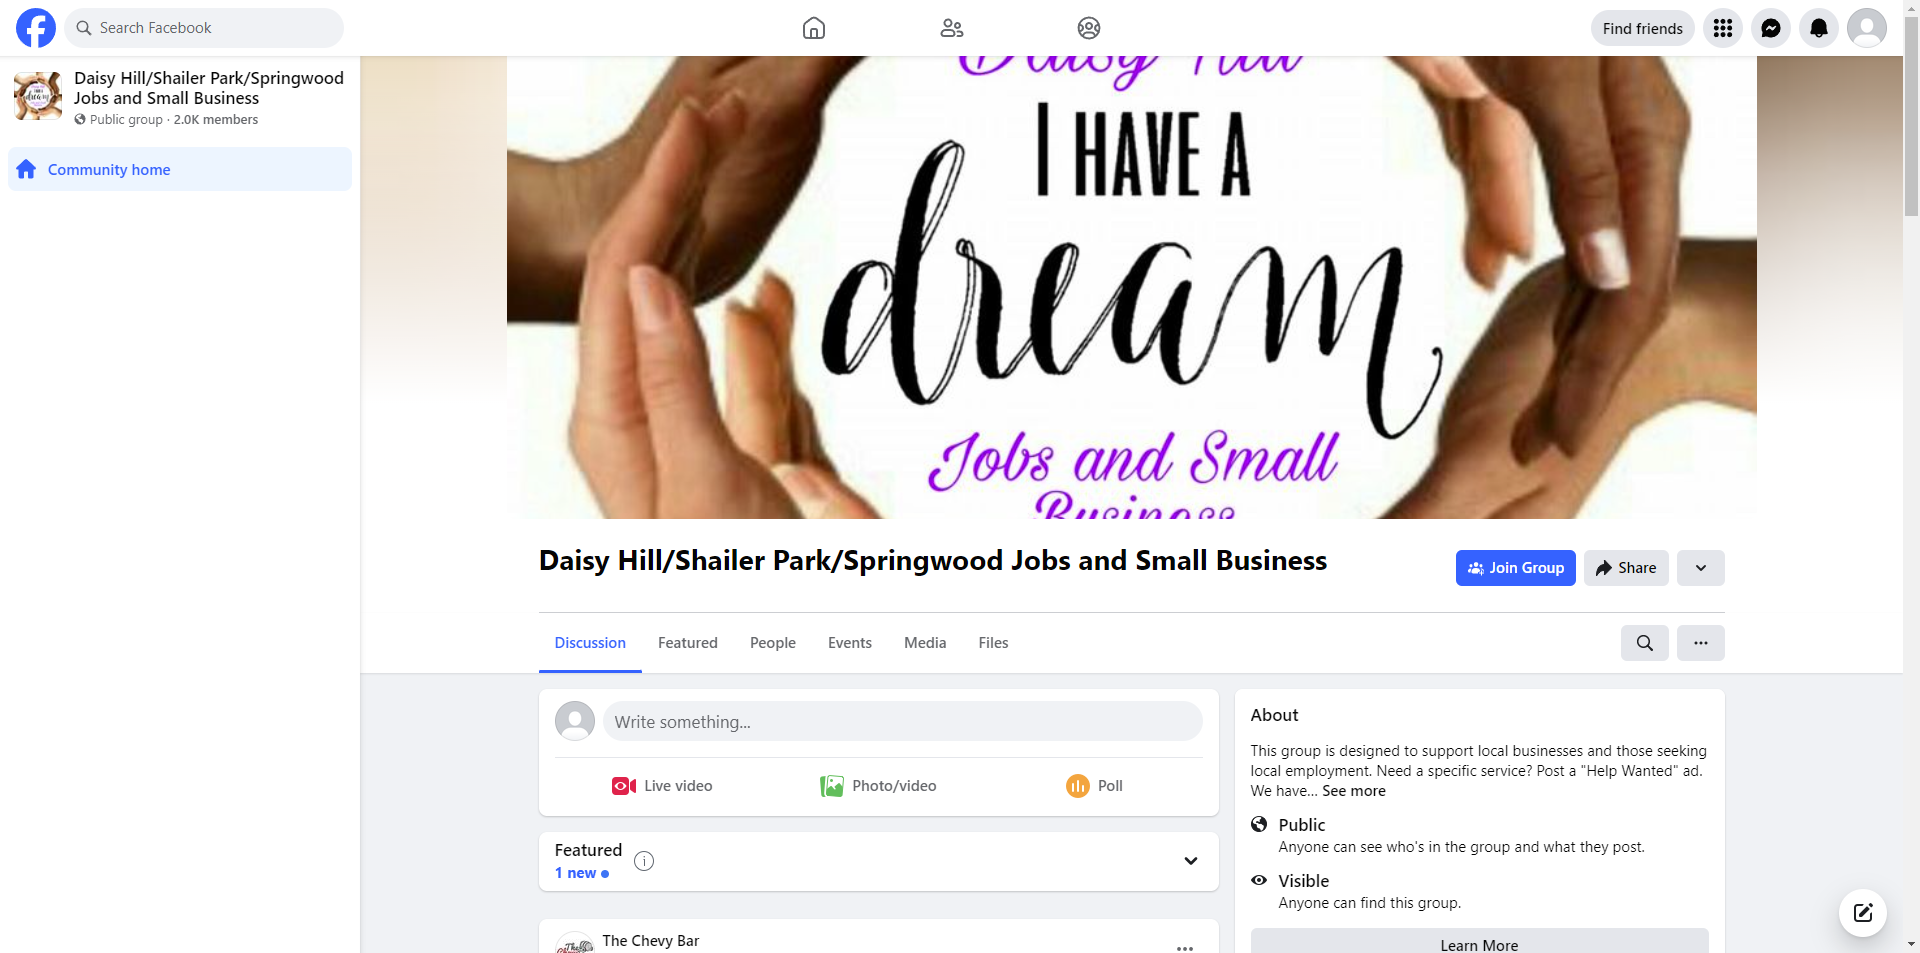 Daisy Hill/Shailer Park/Springwood Jobs and Small Business